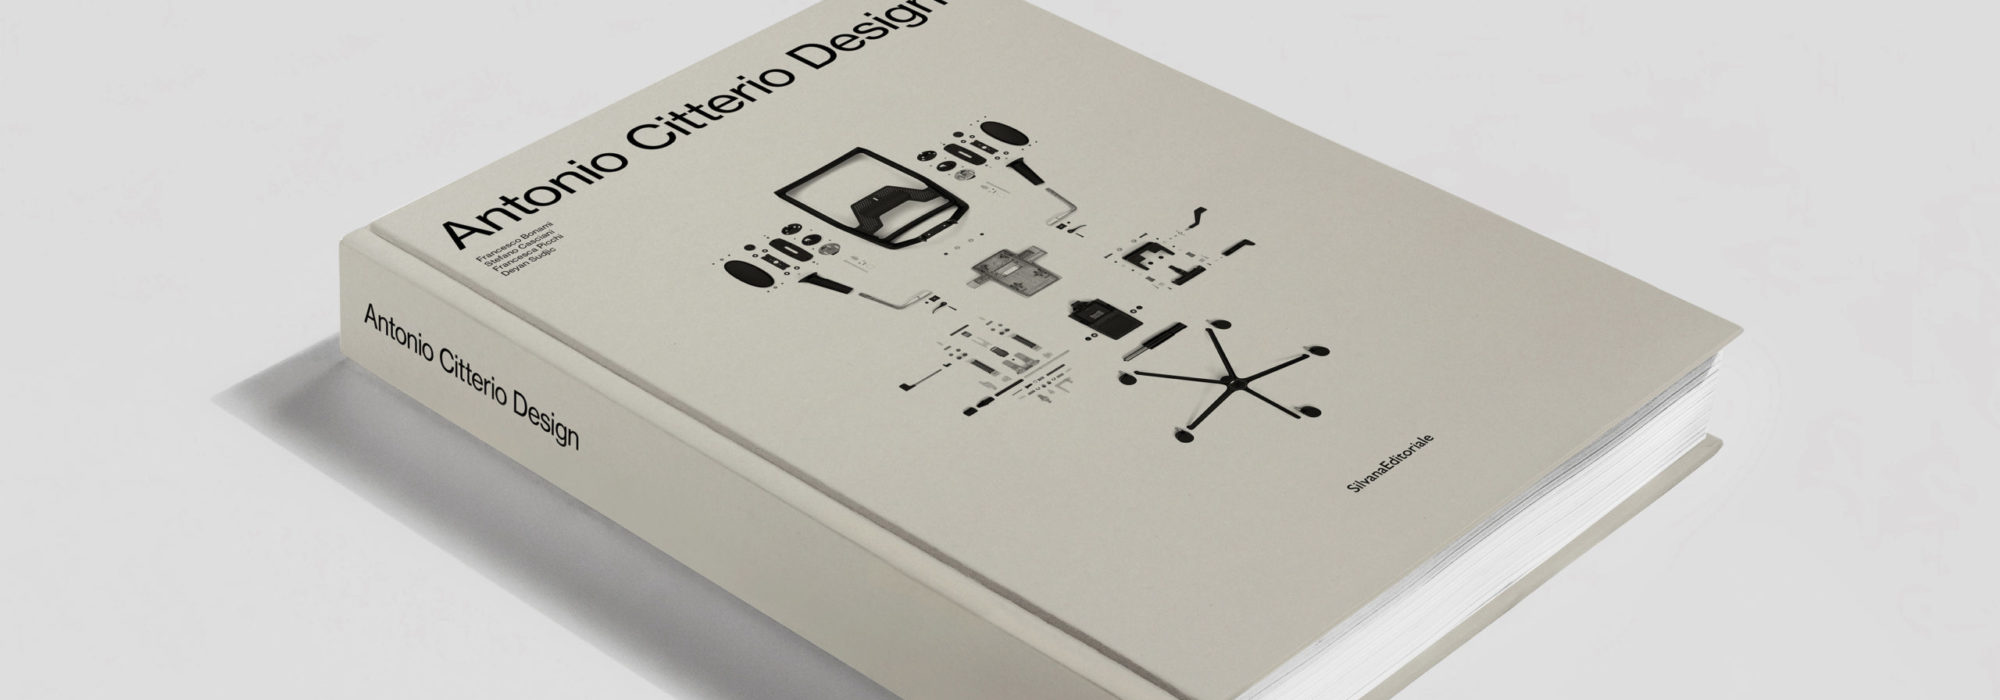 Antonio Citterio Design_cover_ax__LOW